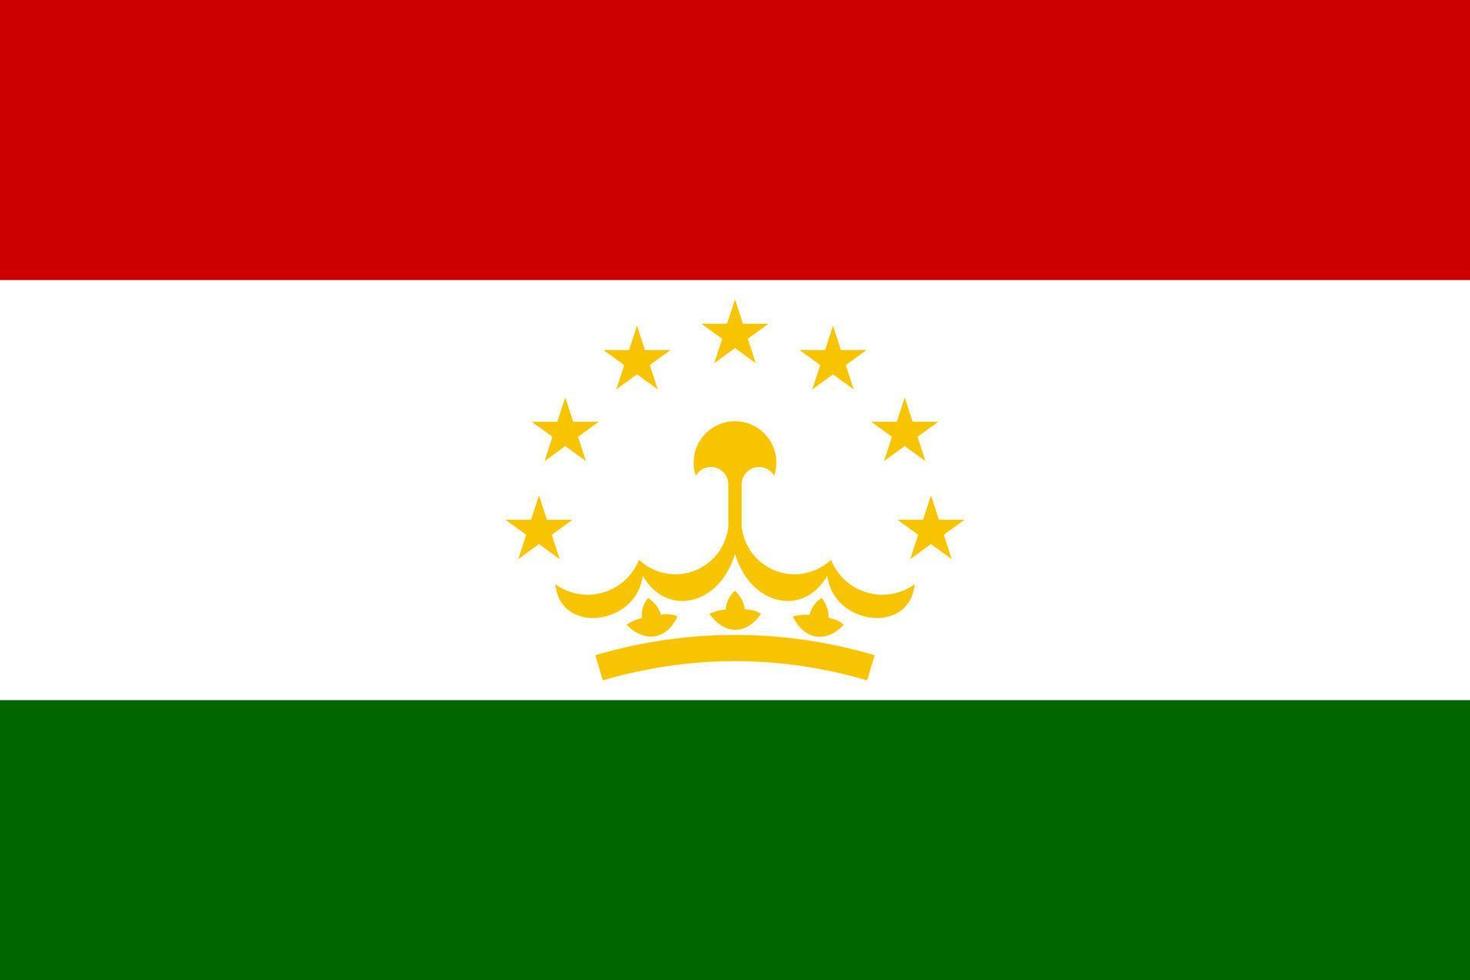 republiek van Tadzjikistan vlag, Tadzjikistan vlag vector, Tadzjikistan land vlag is een symbool van vrijheid, patriottisme en onafhankelijkheid. vector